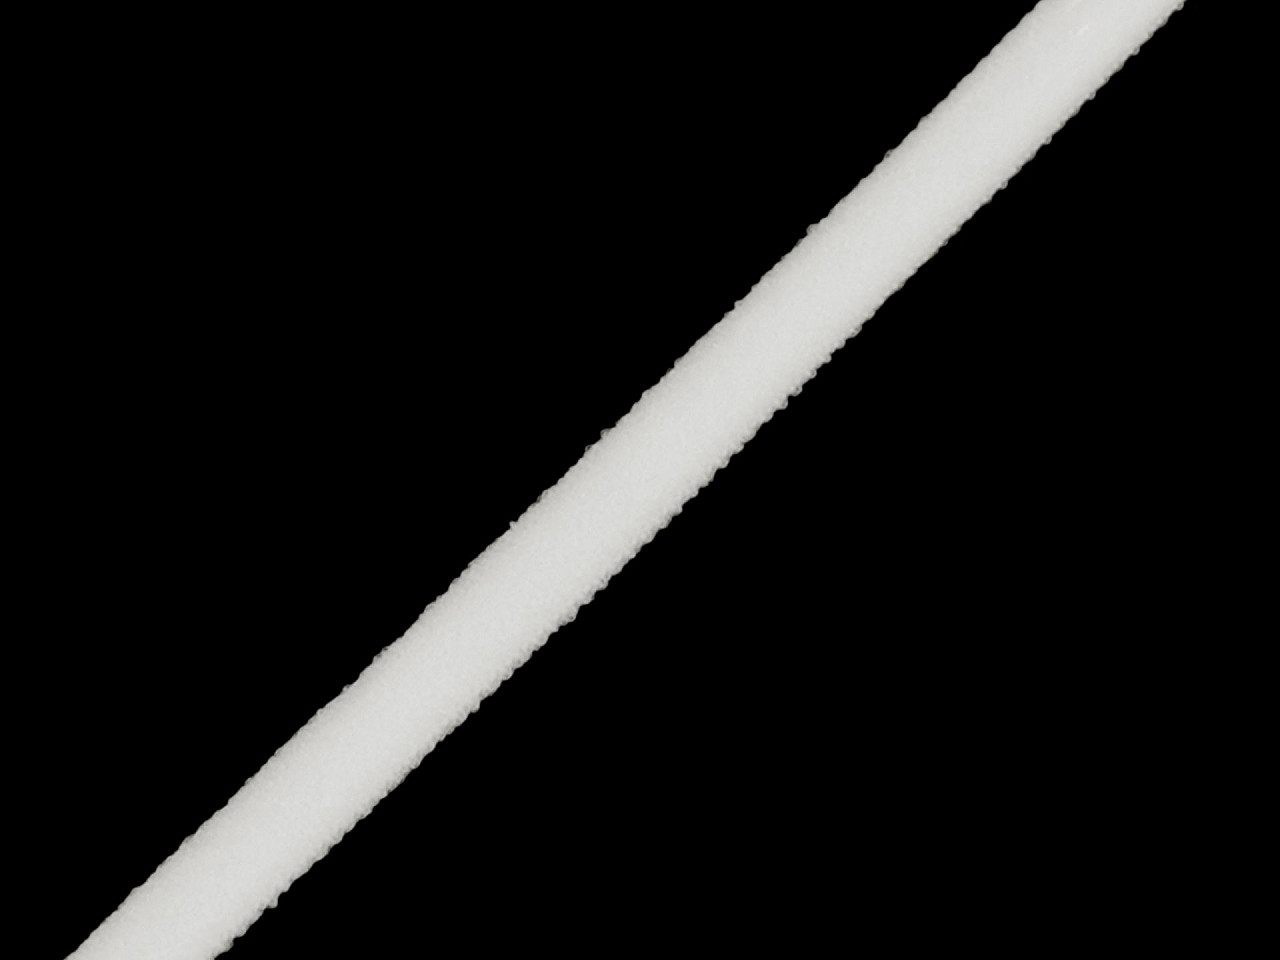 Pruženka měkká s výplní šíře 5 mm, barva 1 bílá